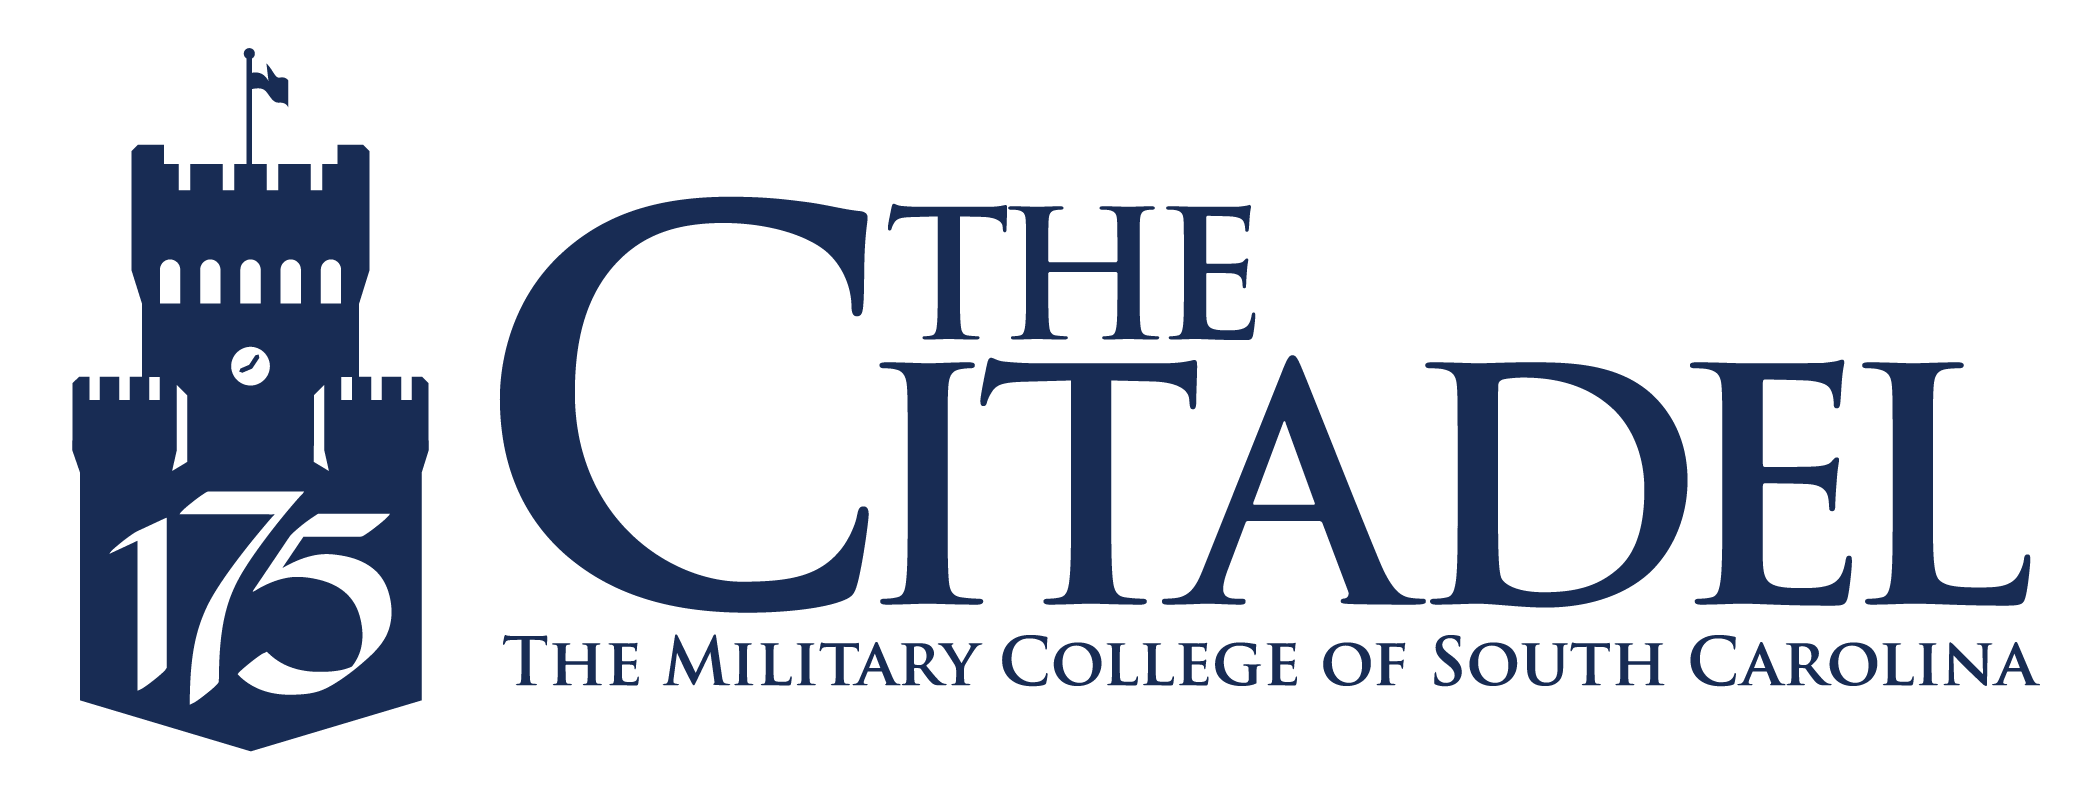 Citadel Logo - 175th Anniversary Citadel, SC